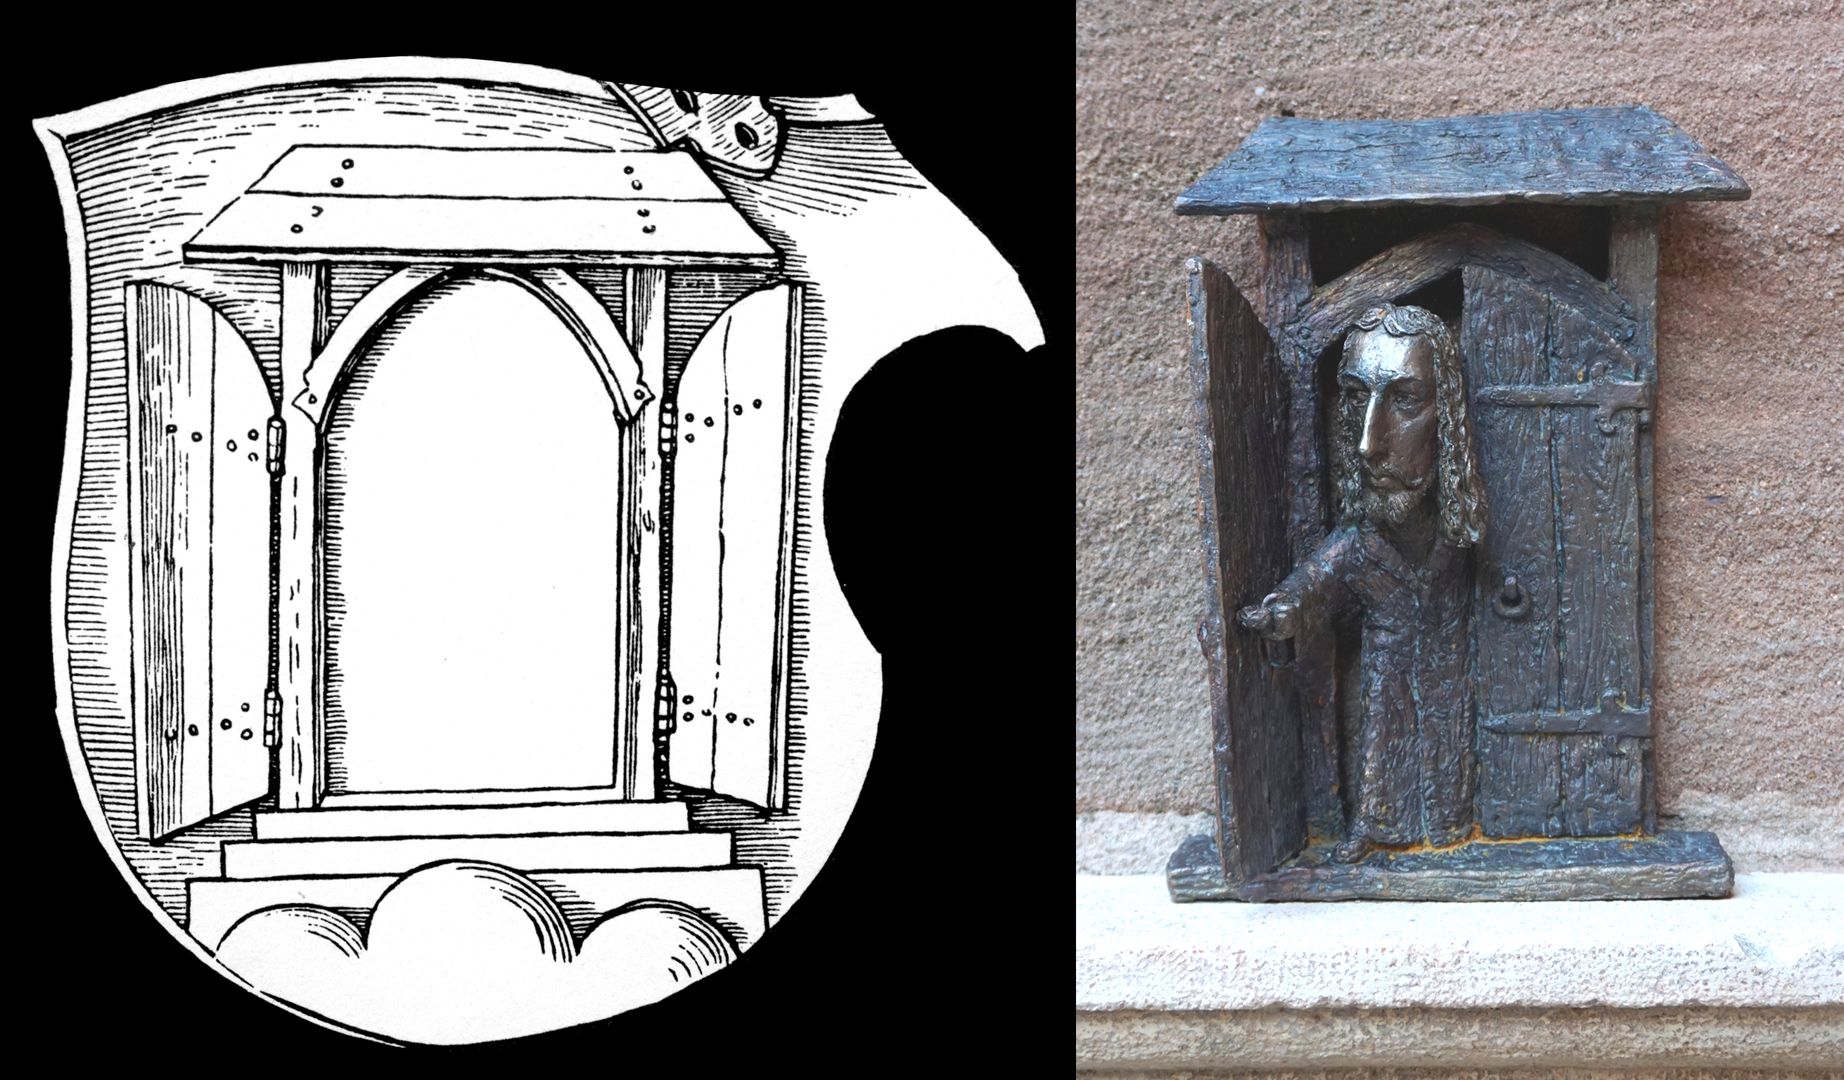 Dürer-Statuette Gegenüberstellung des Türmotivs aus dem Wappenschild Dürers und der Statuette